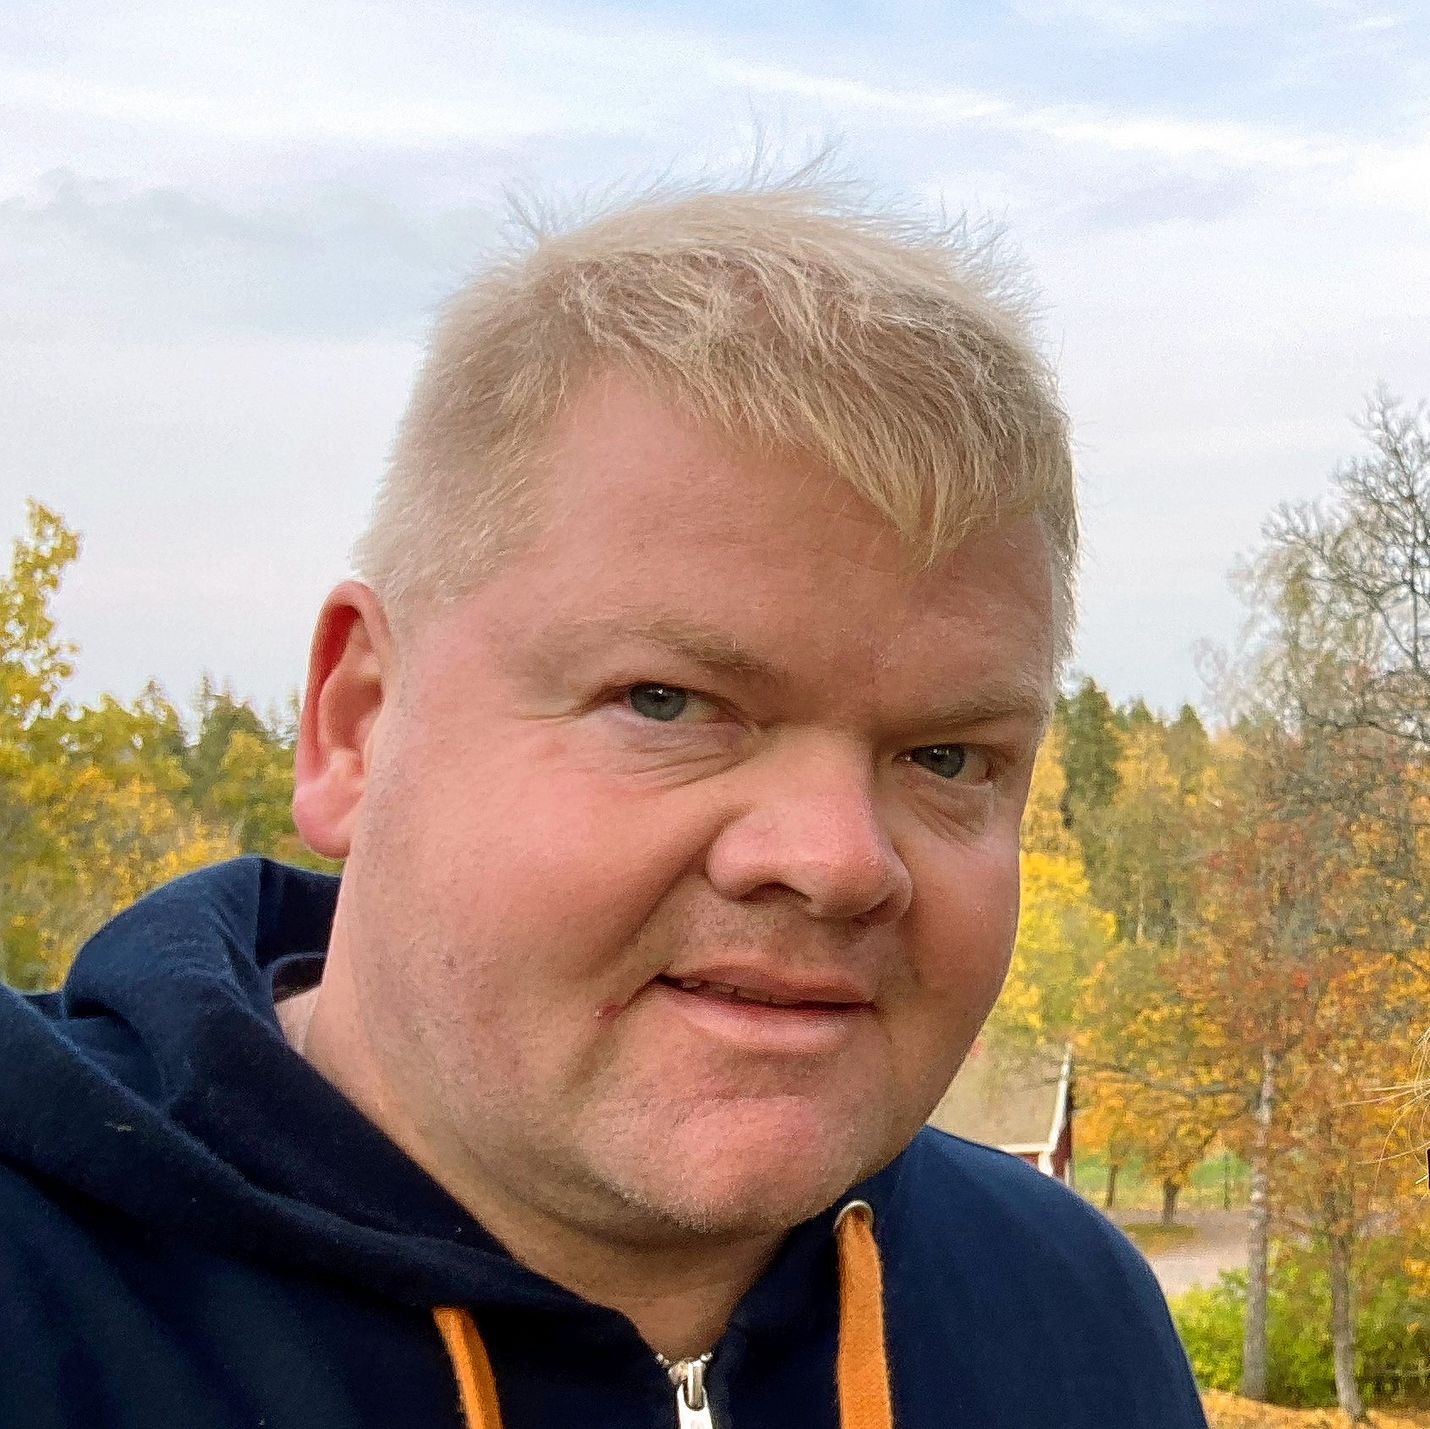 Posti Group Oyj:n johtoryhmän jäsen Yrjö Eskola vierailee melko usein Raumalla, jossa hänellä on perhettä ja paljon ystäviä.